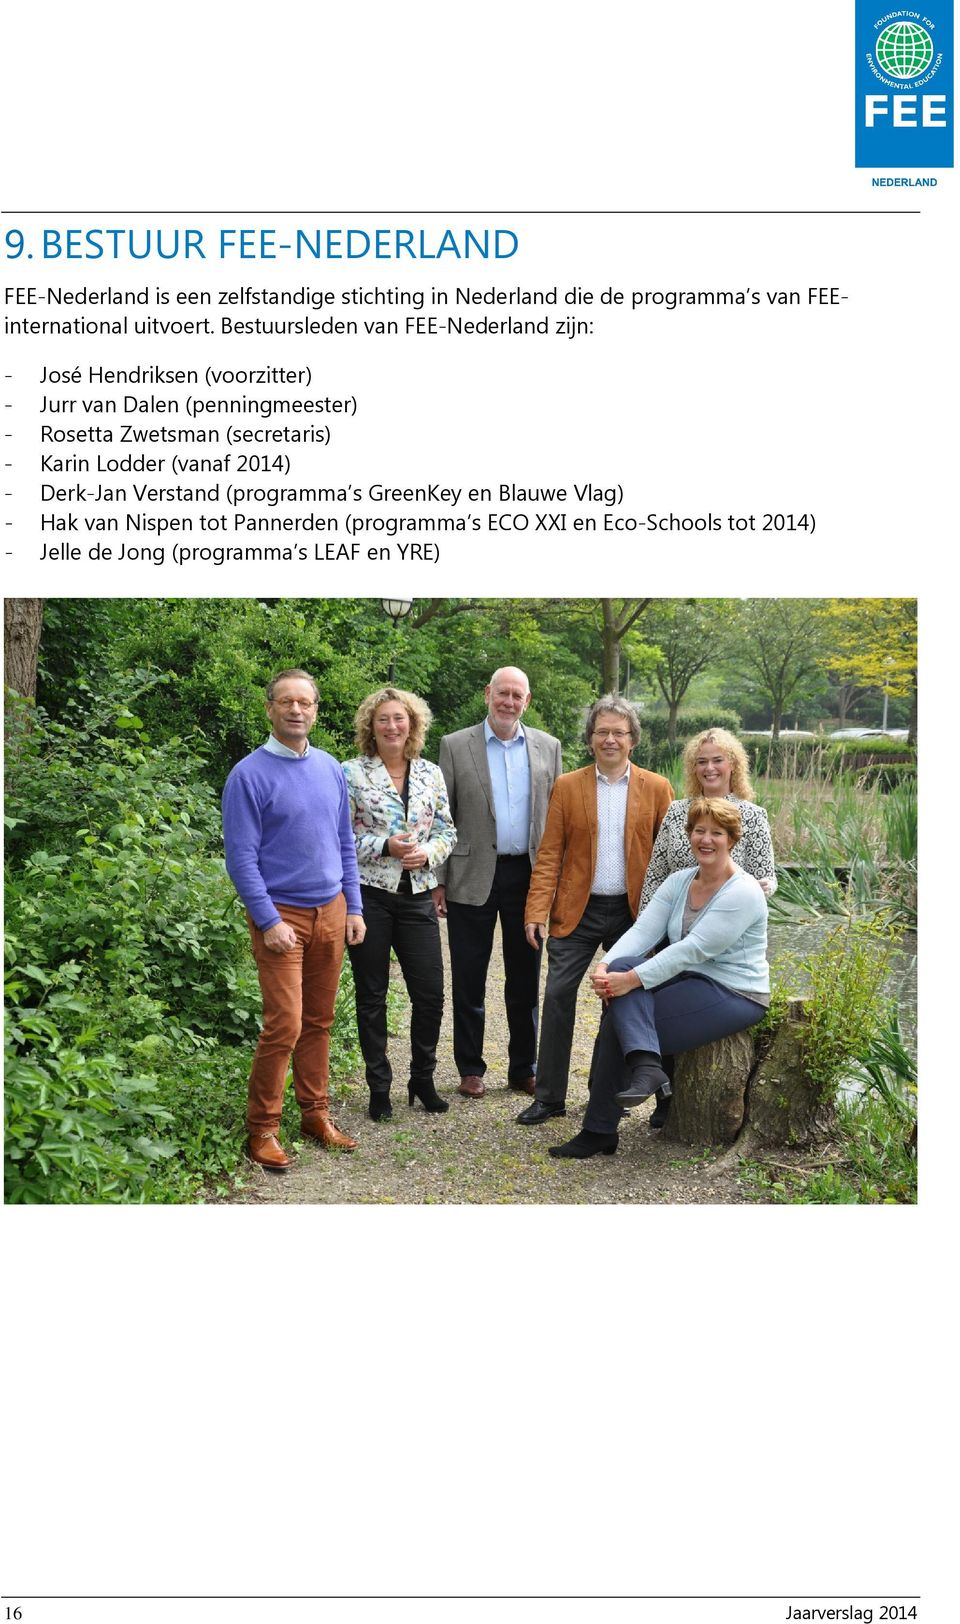 Bestuursleden van FEE-Nederland zijn: - José Hendriksen (voorzitter) - Jurr van Dalen (penningmeester) - Rosetta Zwetsman